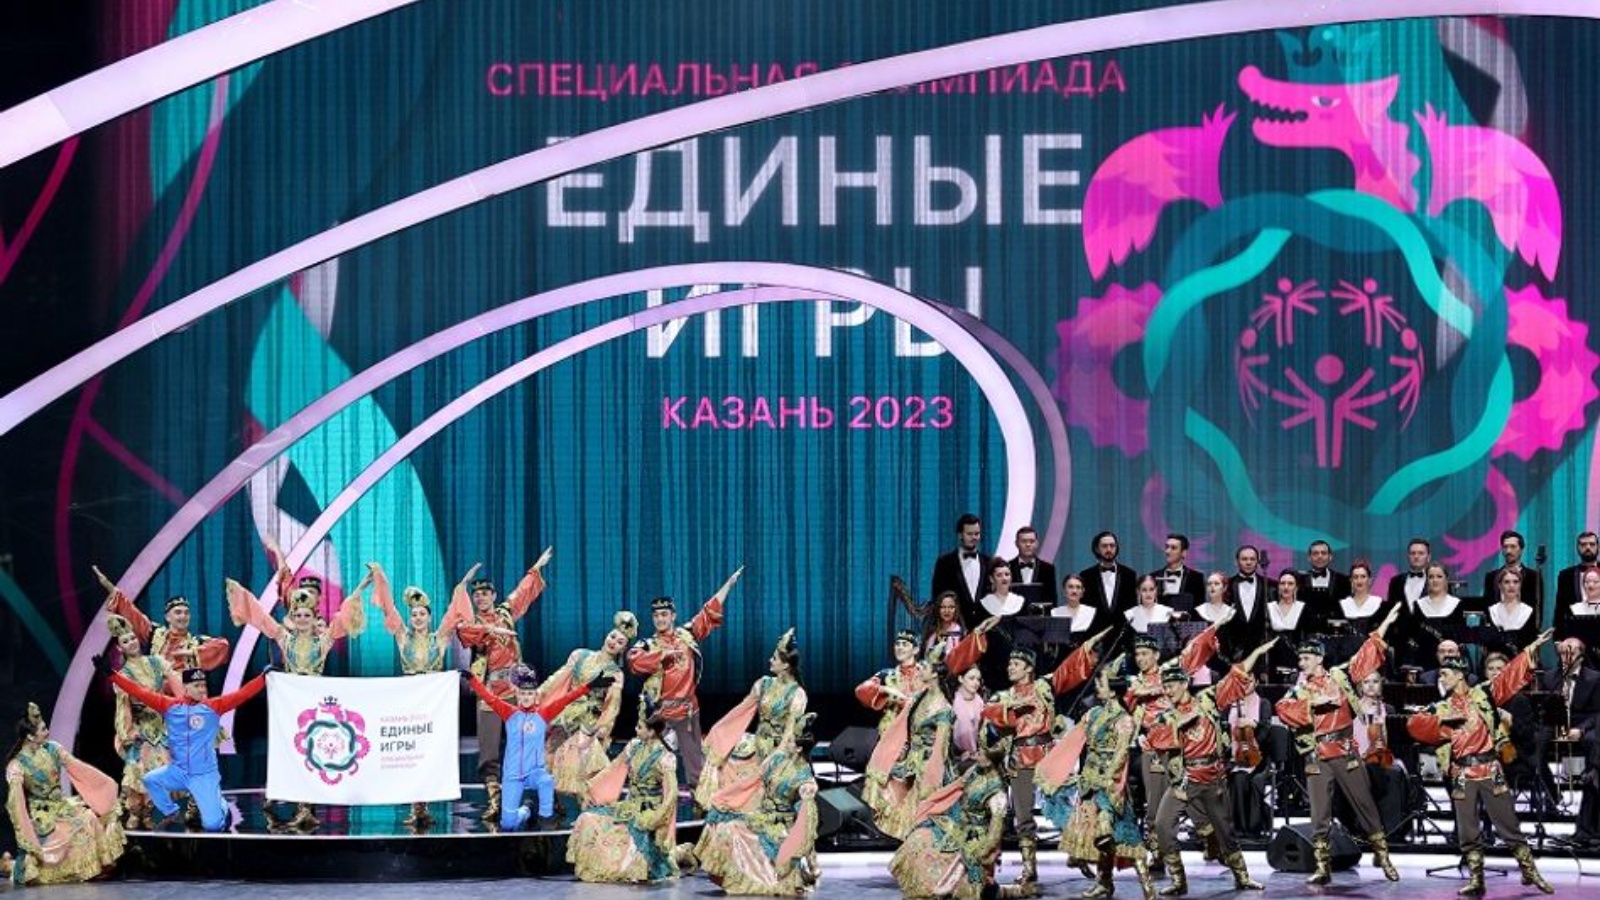 14 ноября 2023 года стартовал проект. Спецолимпиада Казань 2023. Единые игры специальной олимпиады 2023 года Казань.